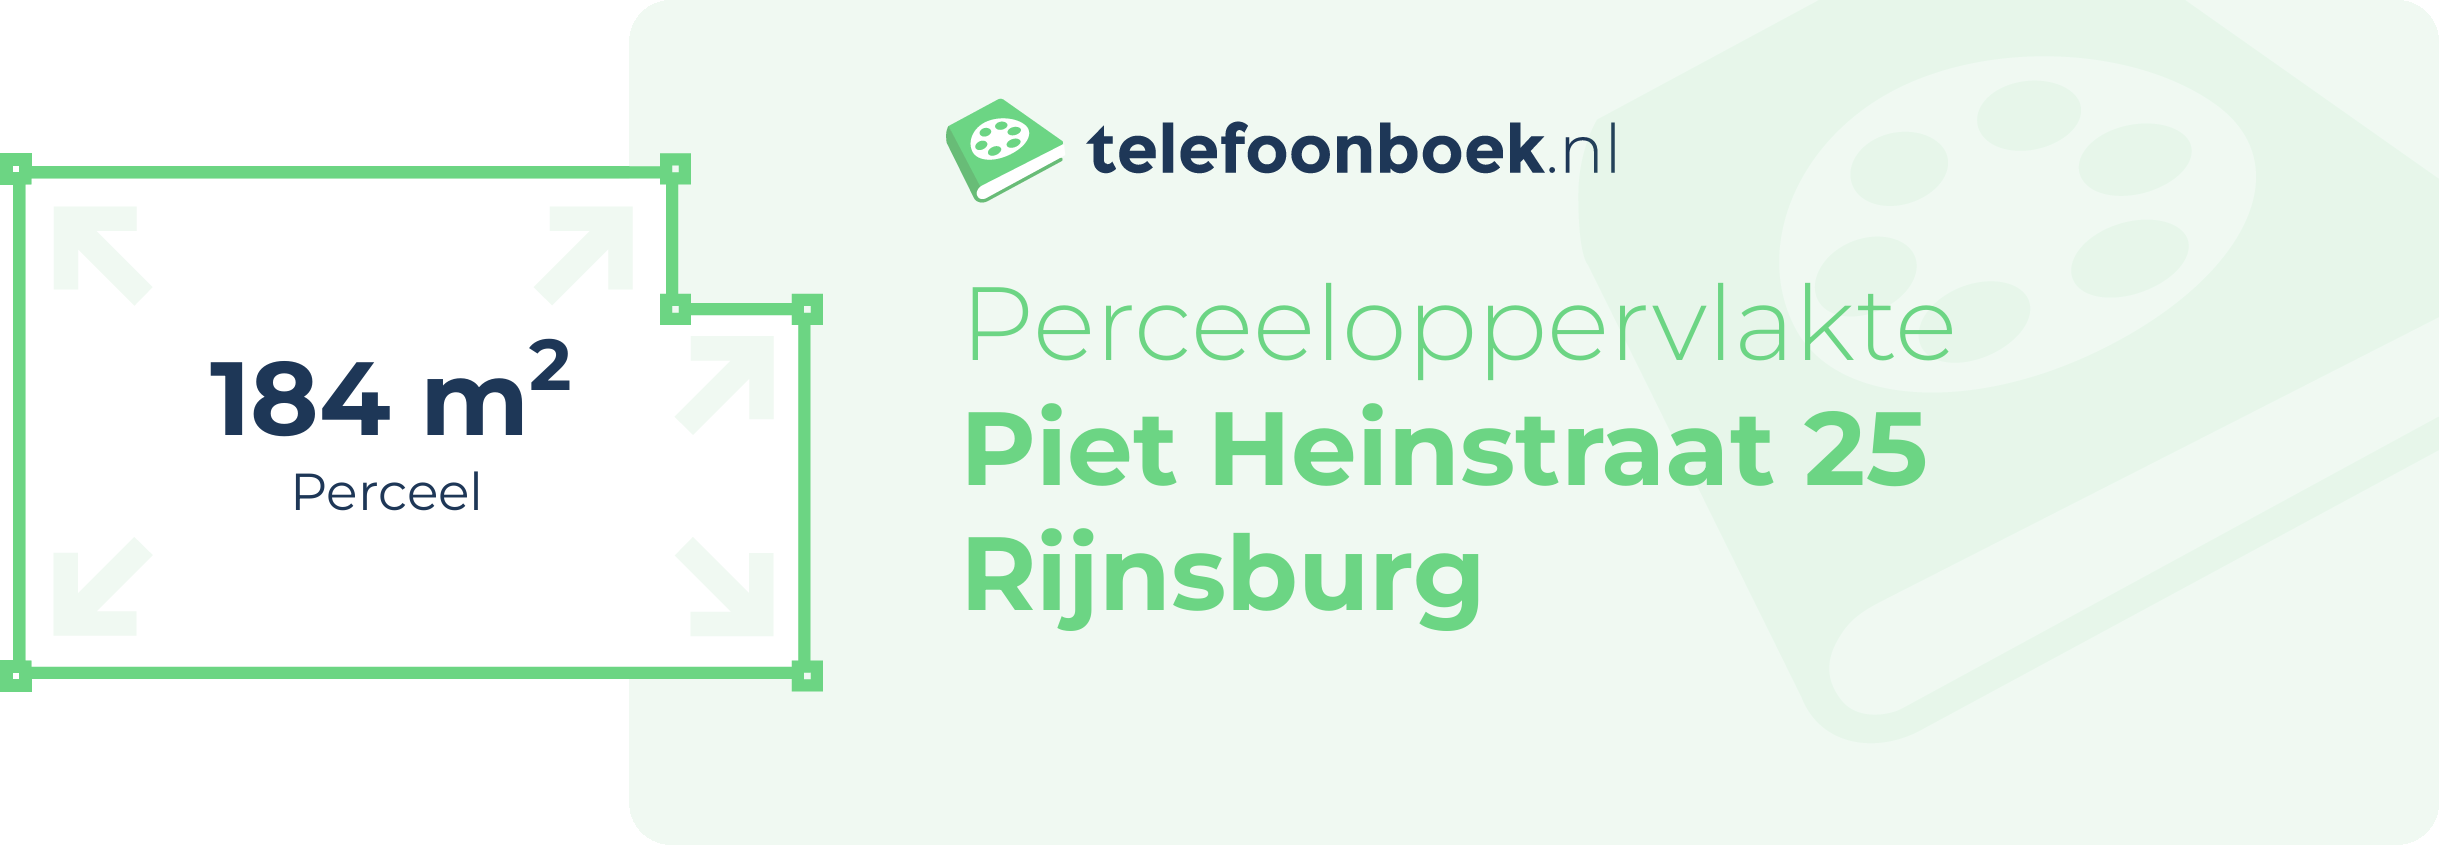 Perceeloppervlakte Piet Heinstraat 25 Rijnsburg